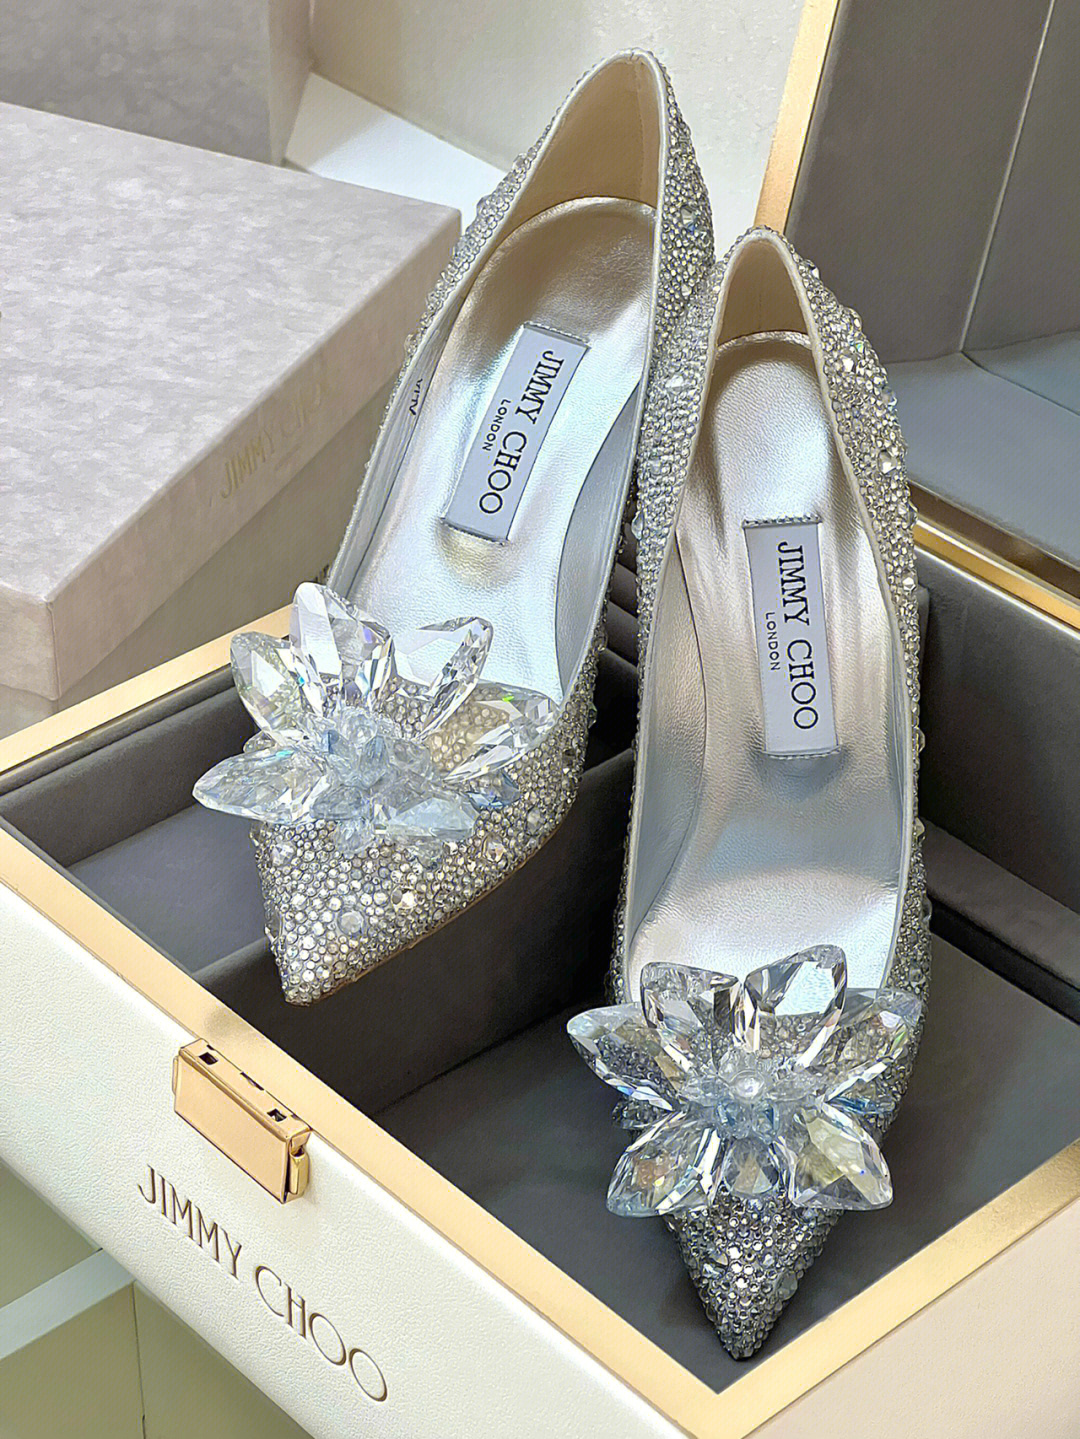 灰姑娘的水晶鞋的时候心里认定就是她了95每个女孩心中都有一个公主